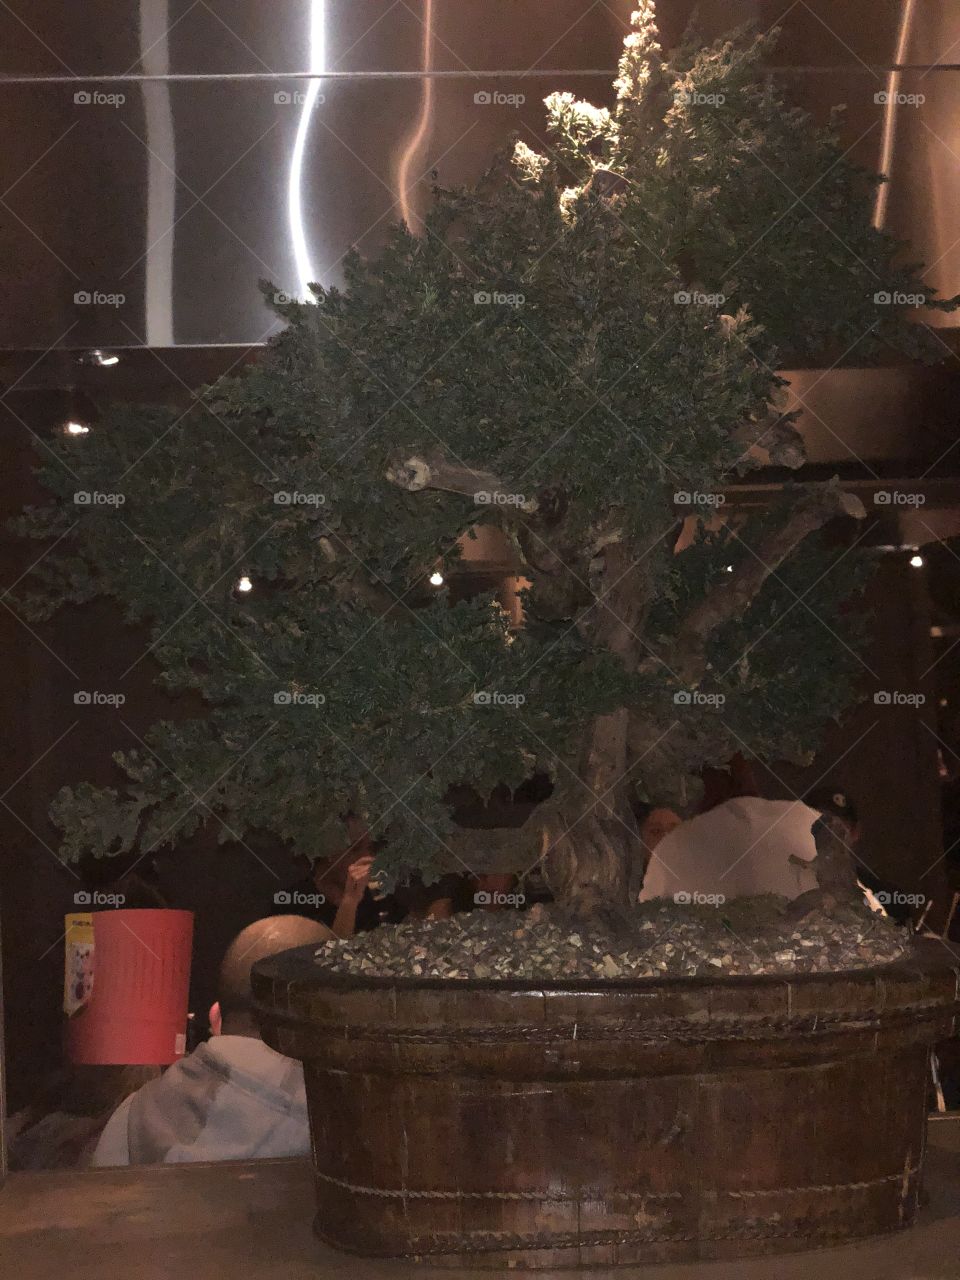 A bonsai tree, green plant.